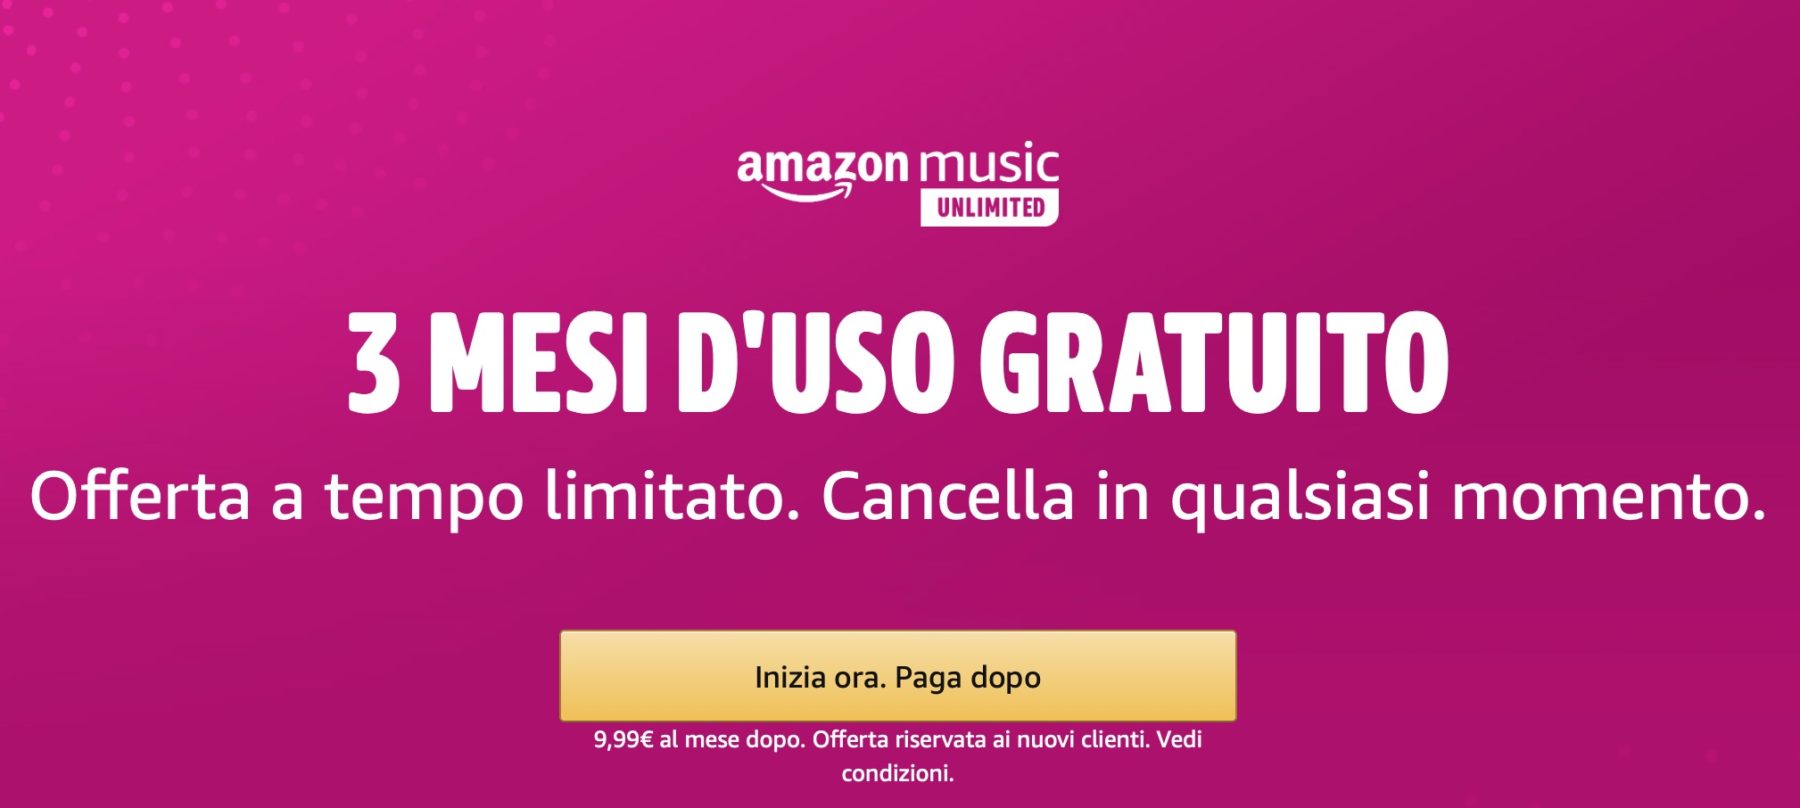 Come attivare 3 mesi gratis Amazon Music